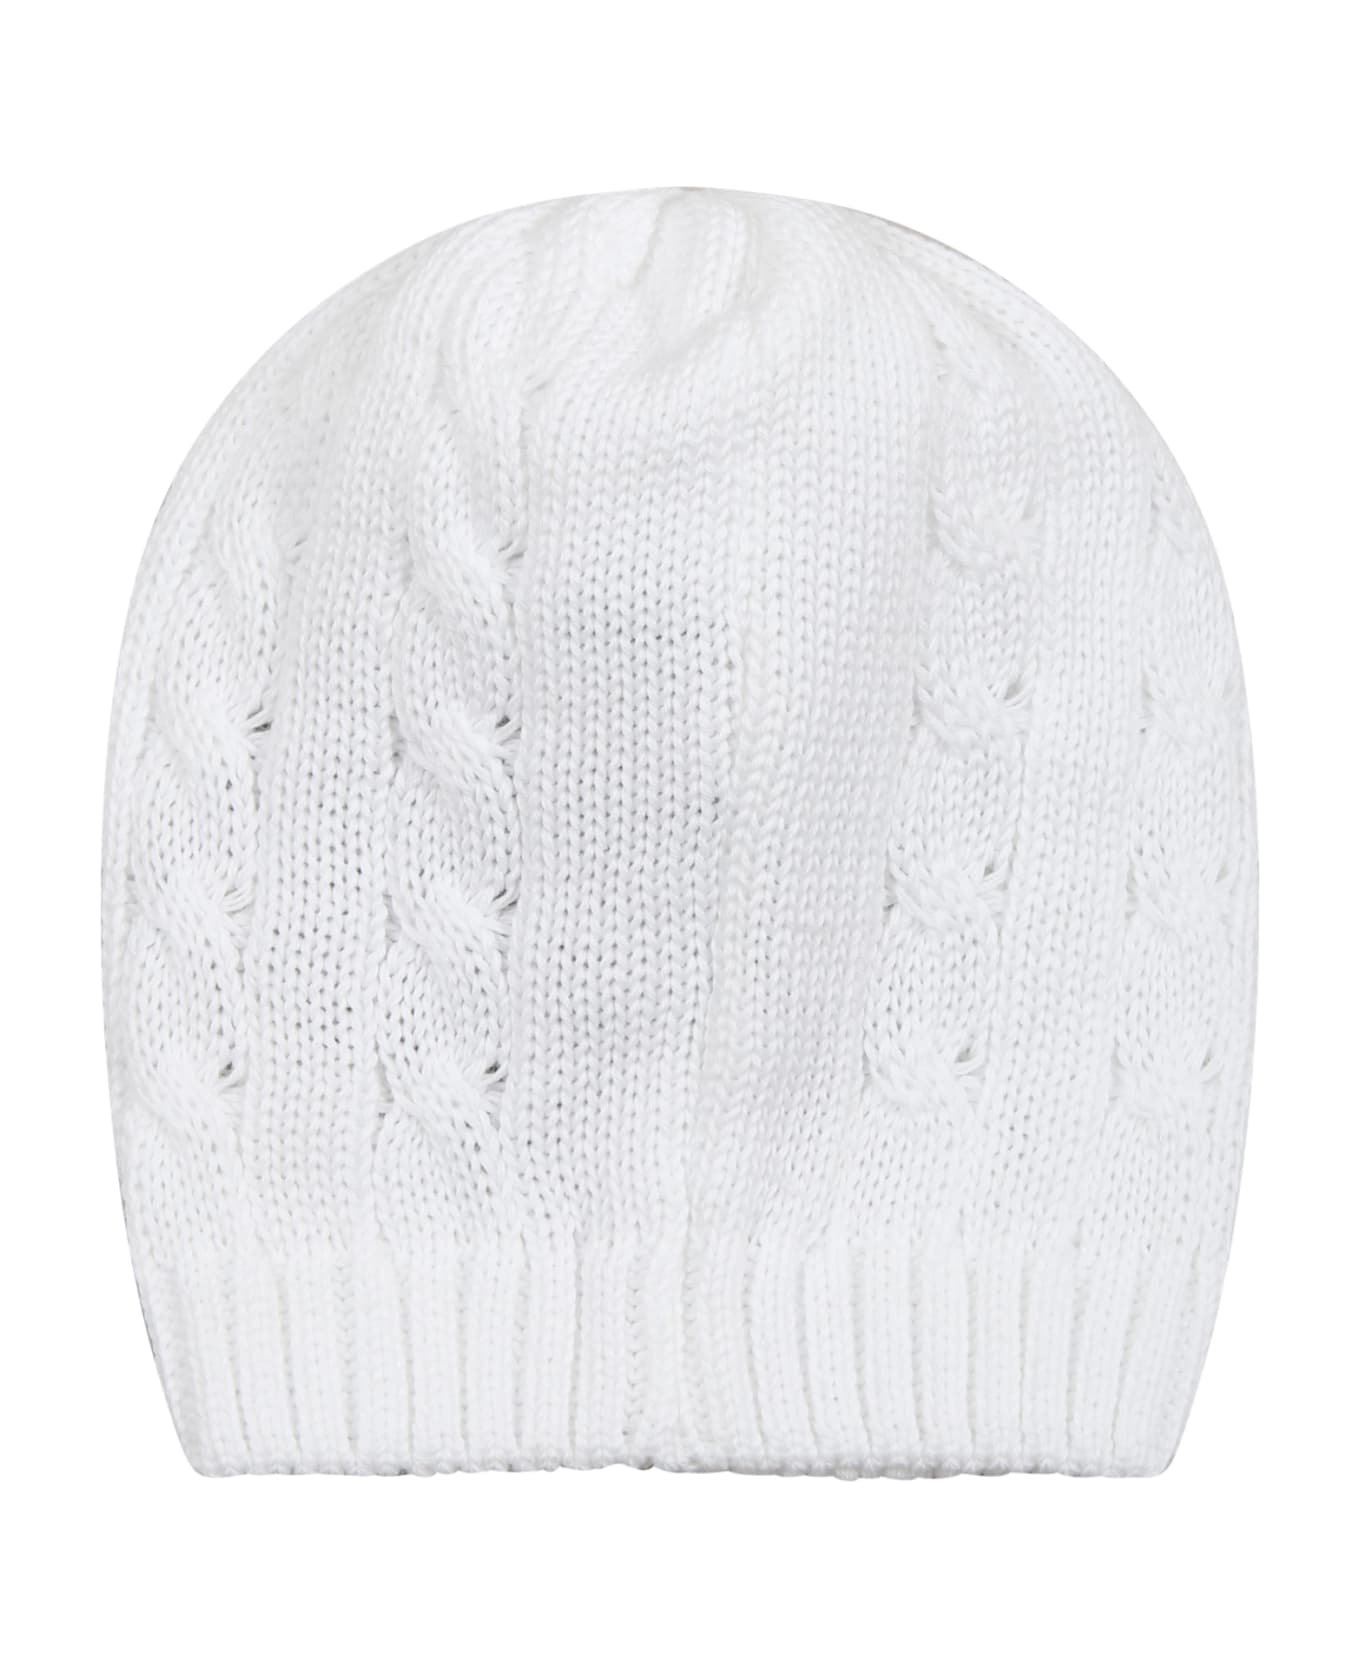 Little Bear White Hat For Babies - White